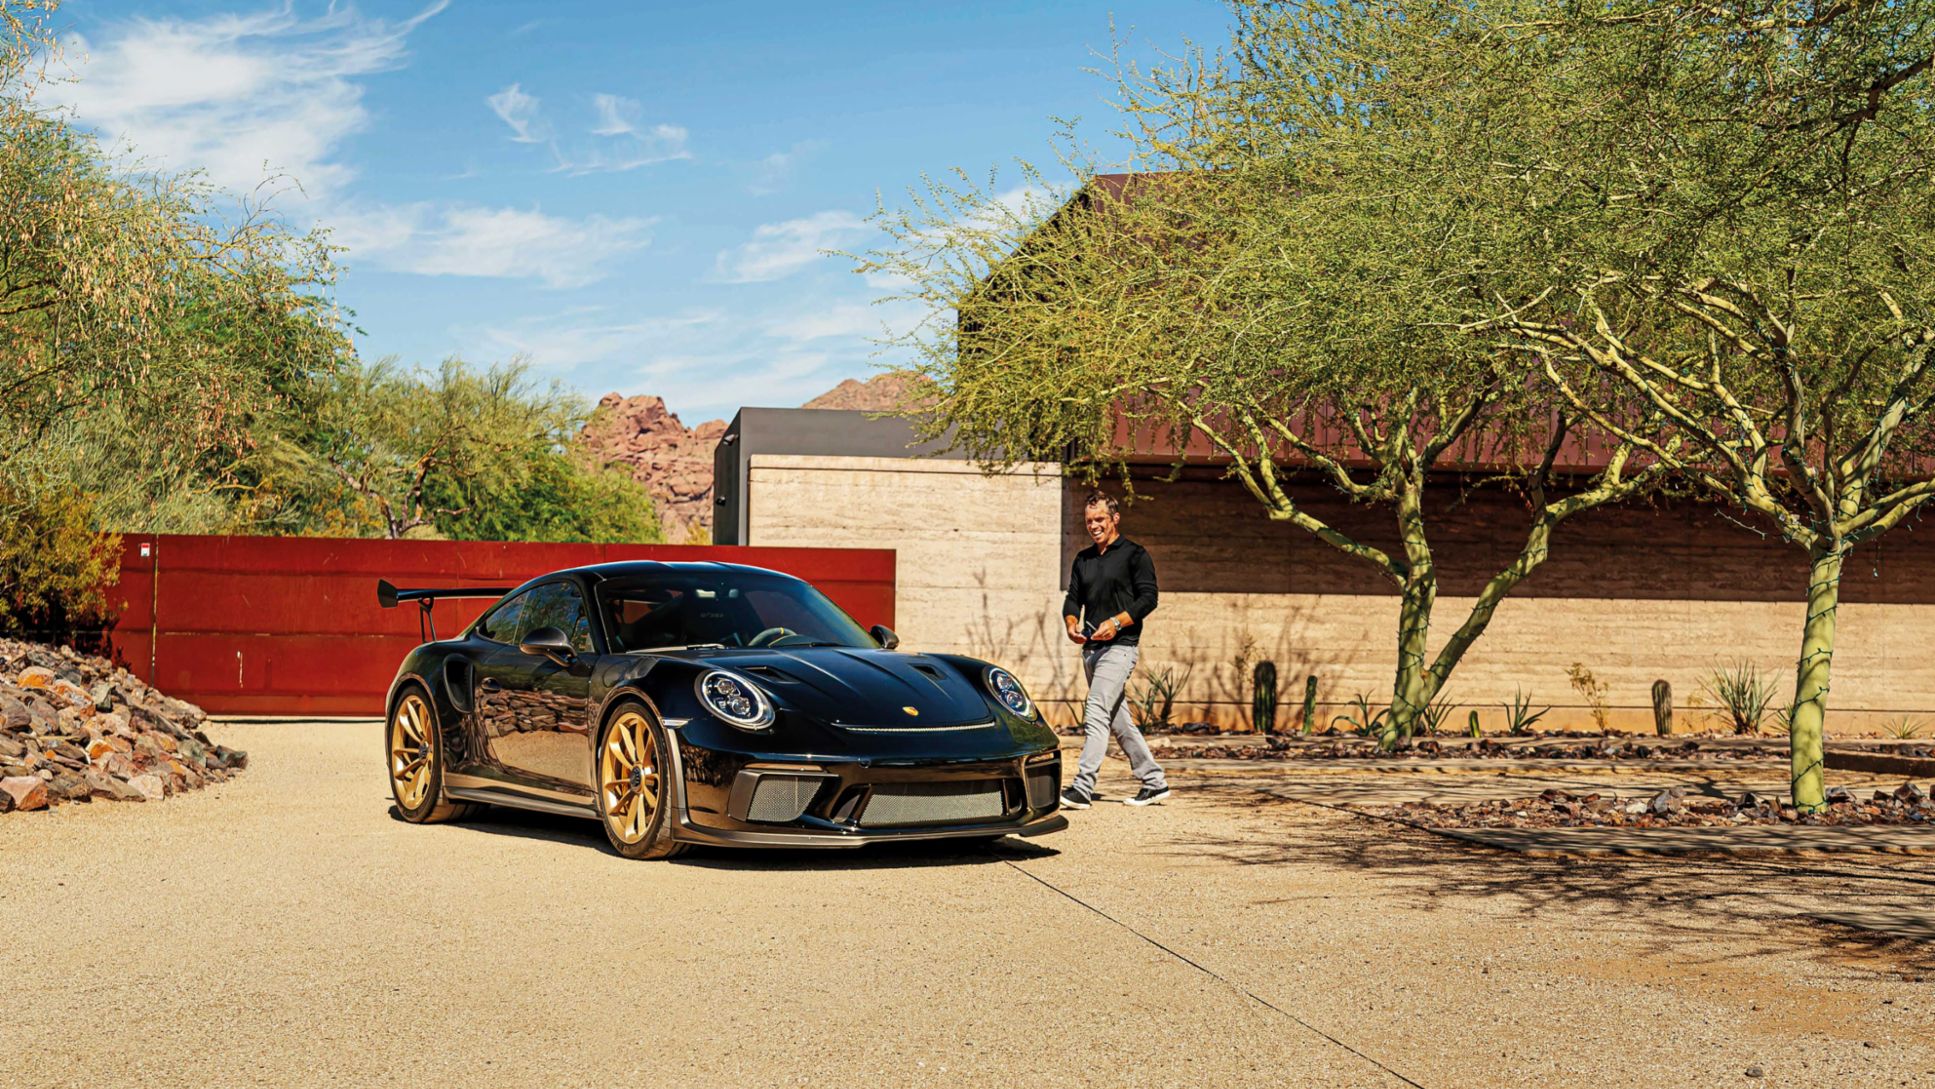 Paul Casey, Porsche Brand Ambassador, Porsche 911 GT3 RS, 2020, Porsche AG